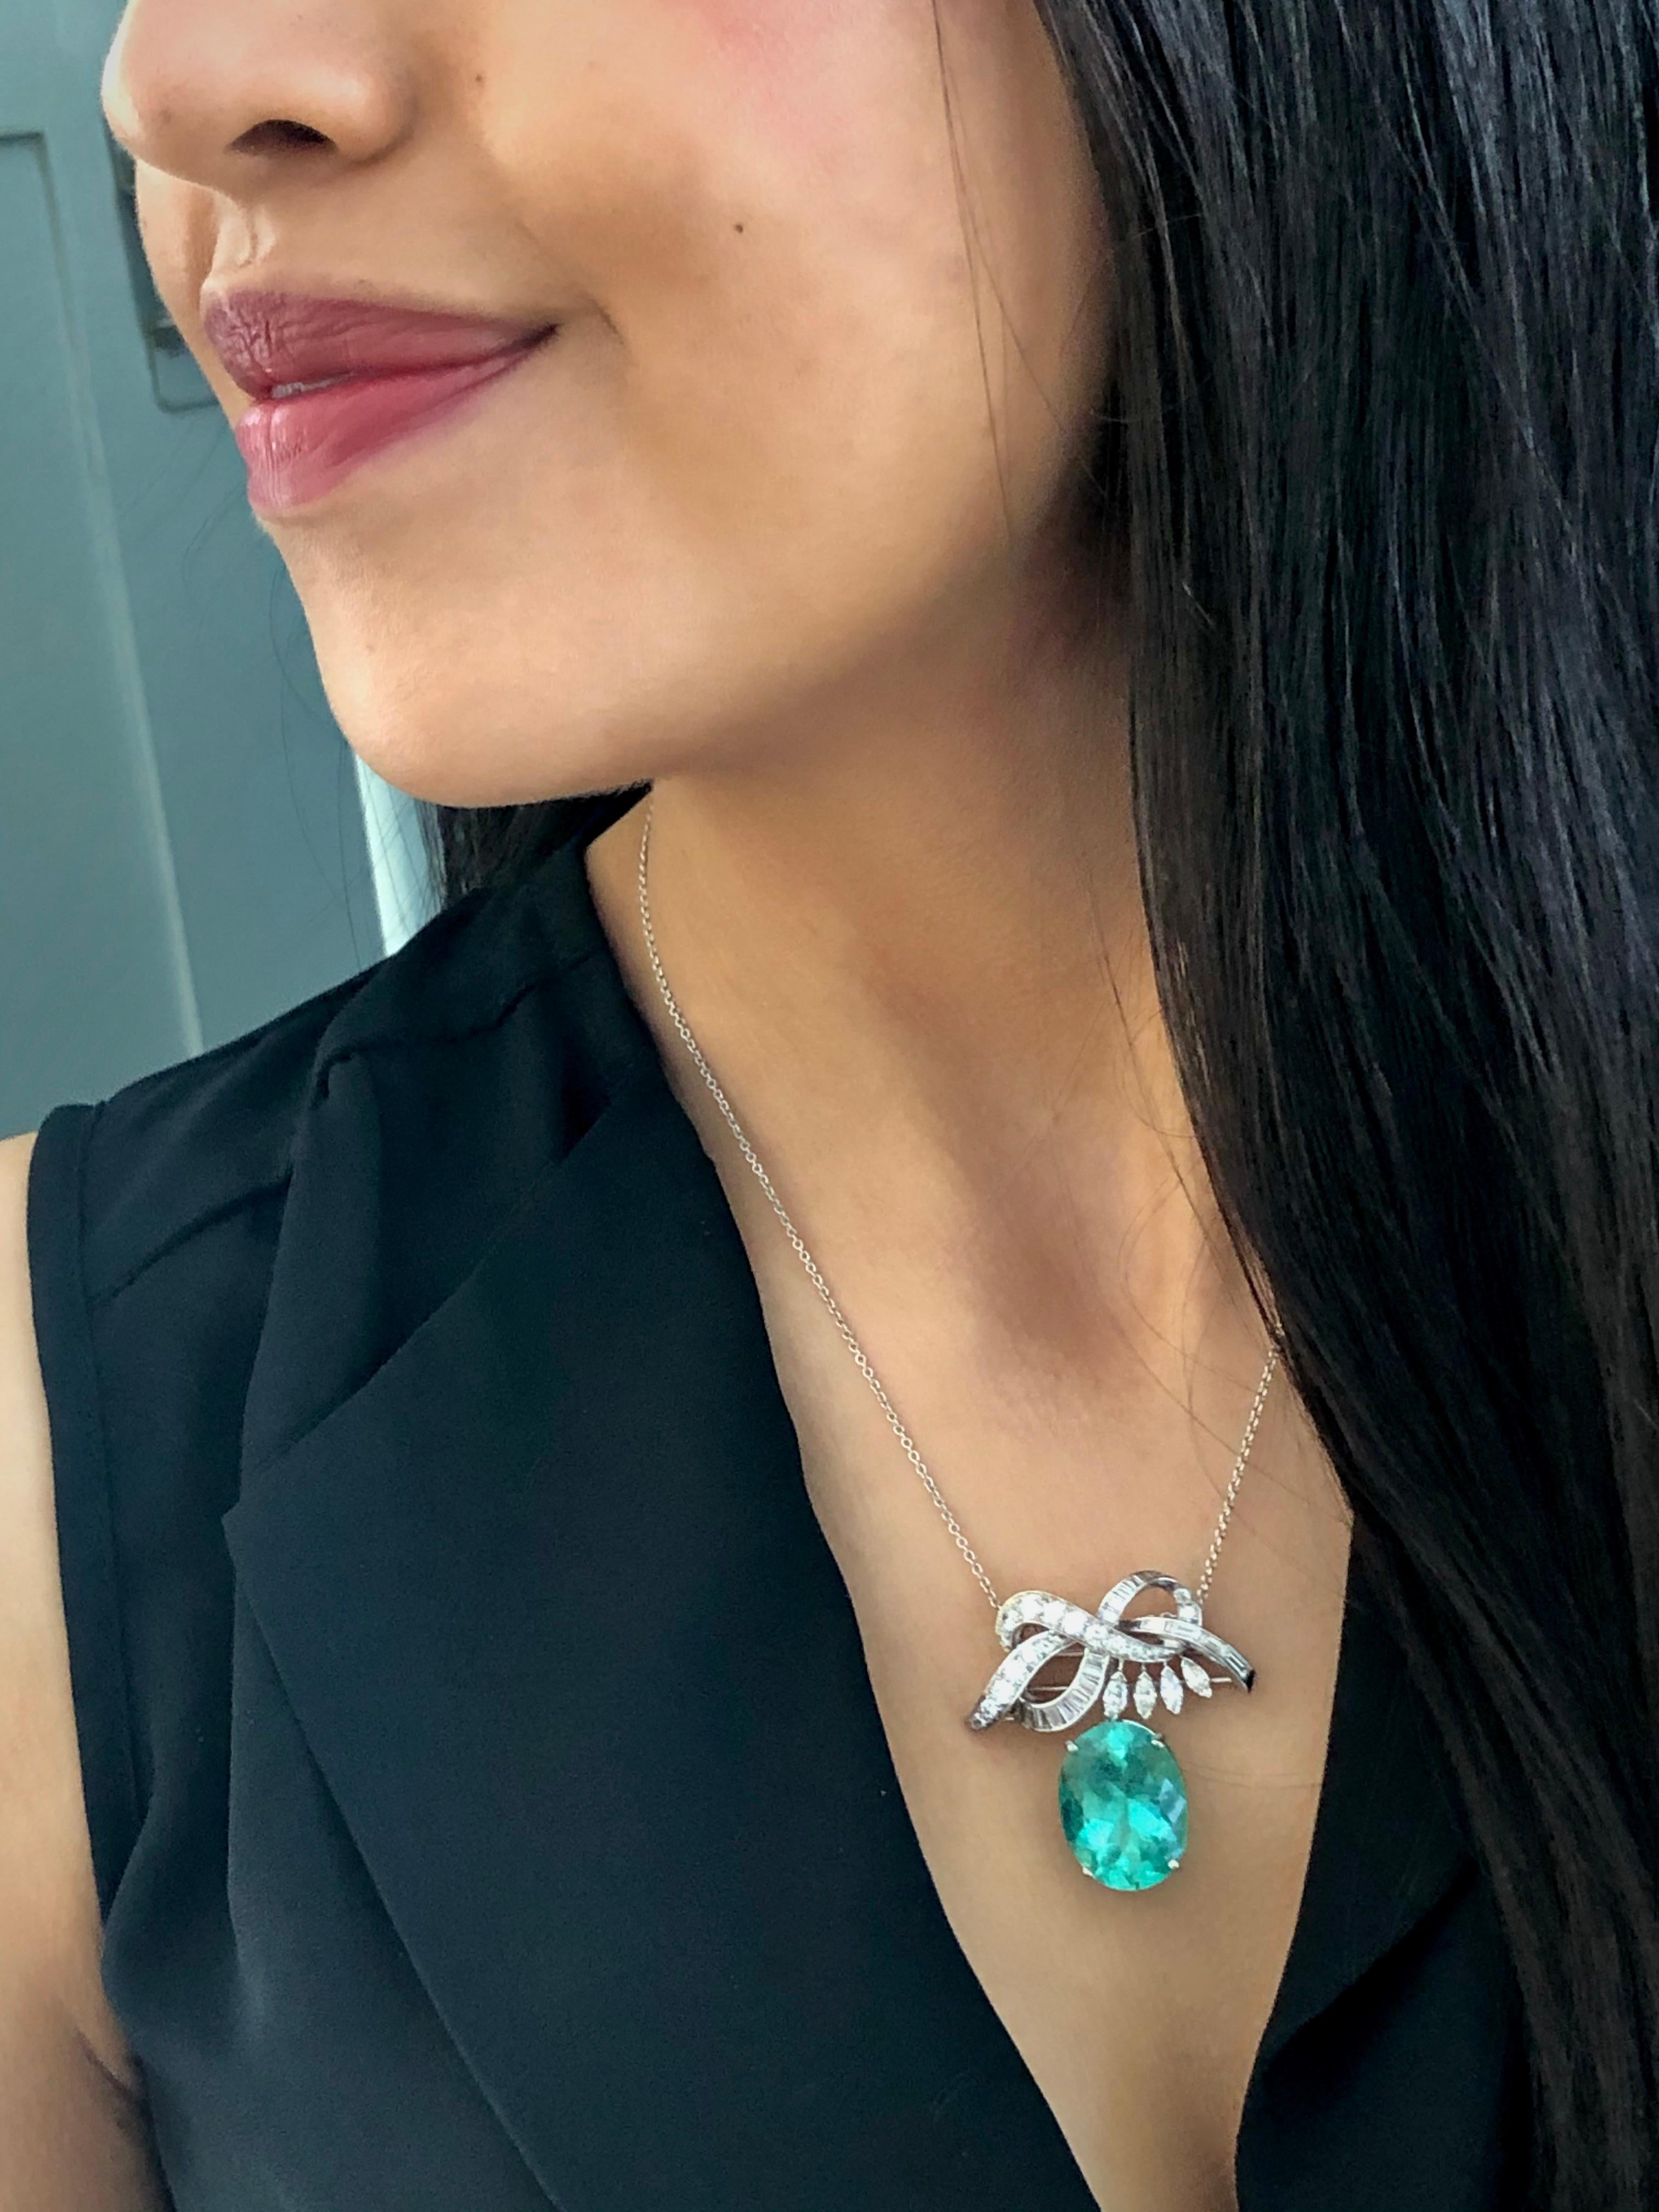 Eine exquisite Brosche/Anhänger-Halskette mit einem natürlichen kolumbianischen Smaragd im Ovalschliff mit einem Gewicht von 16,16 Karat, eingefasst in eine Brosche mit Bandmotiv. Das Band ist mit spitz zulaufenden Diamanten im Baguetteschliff,